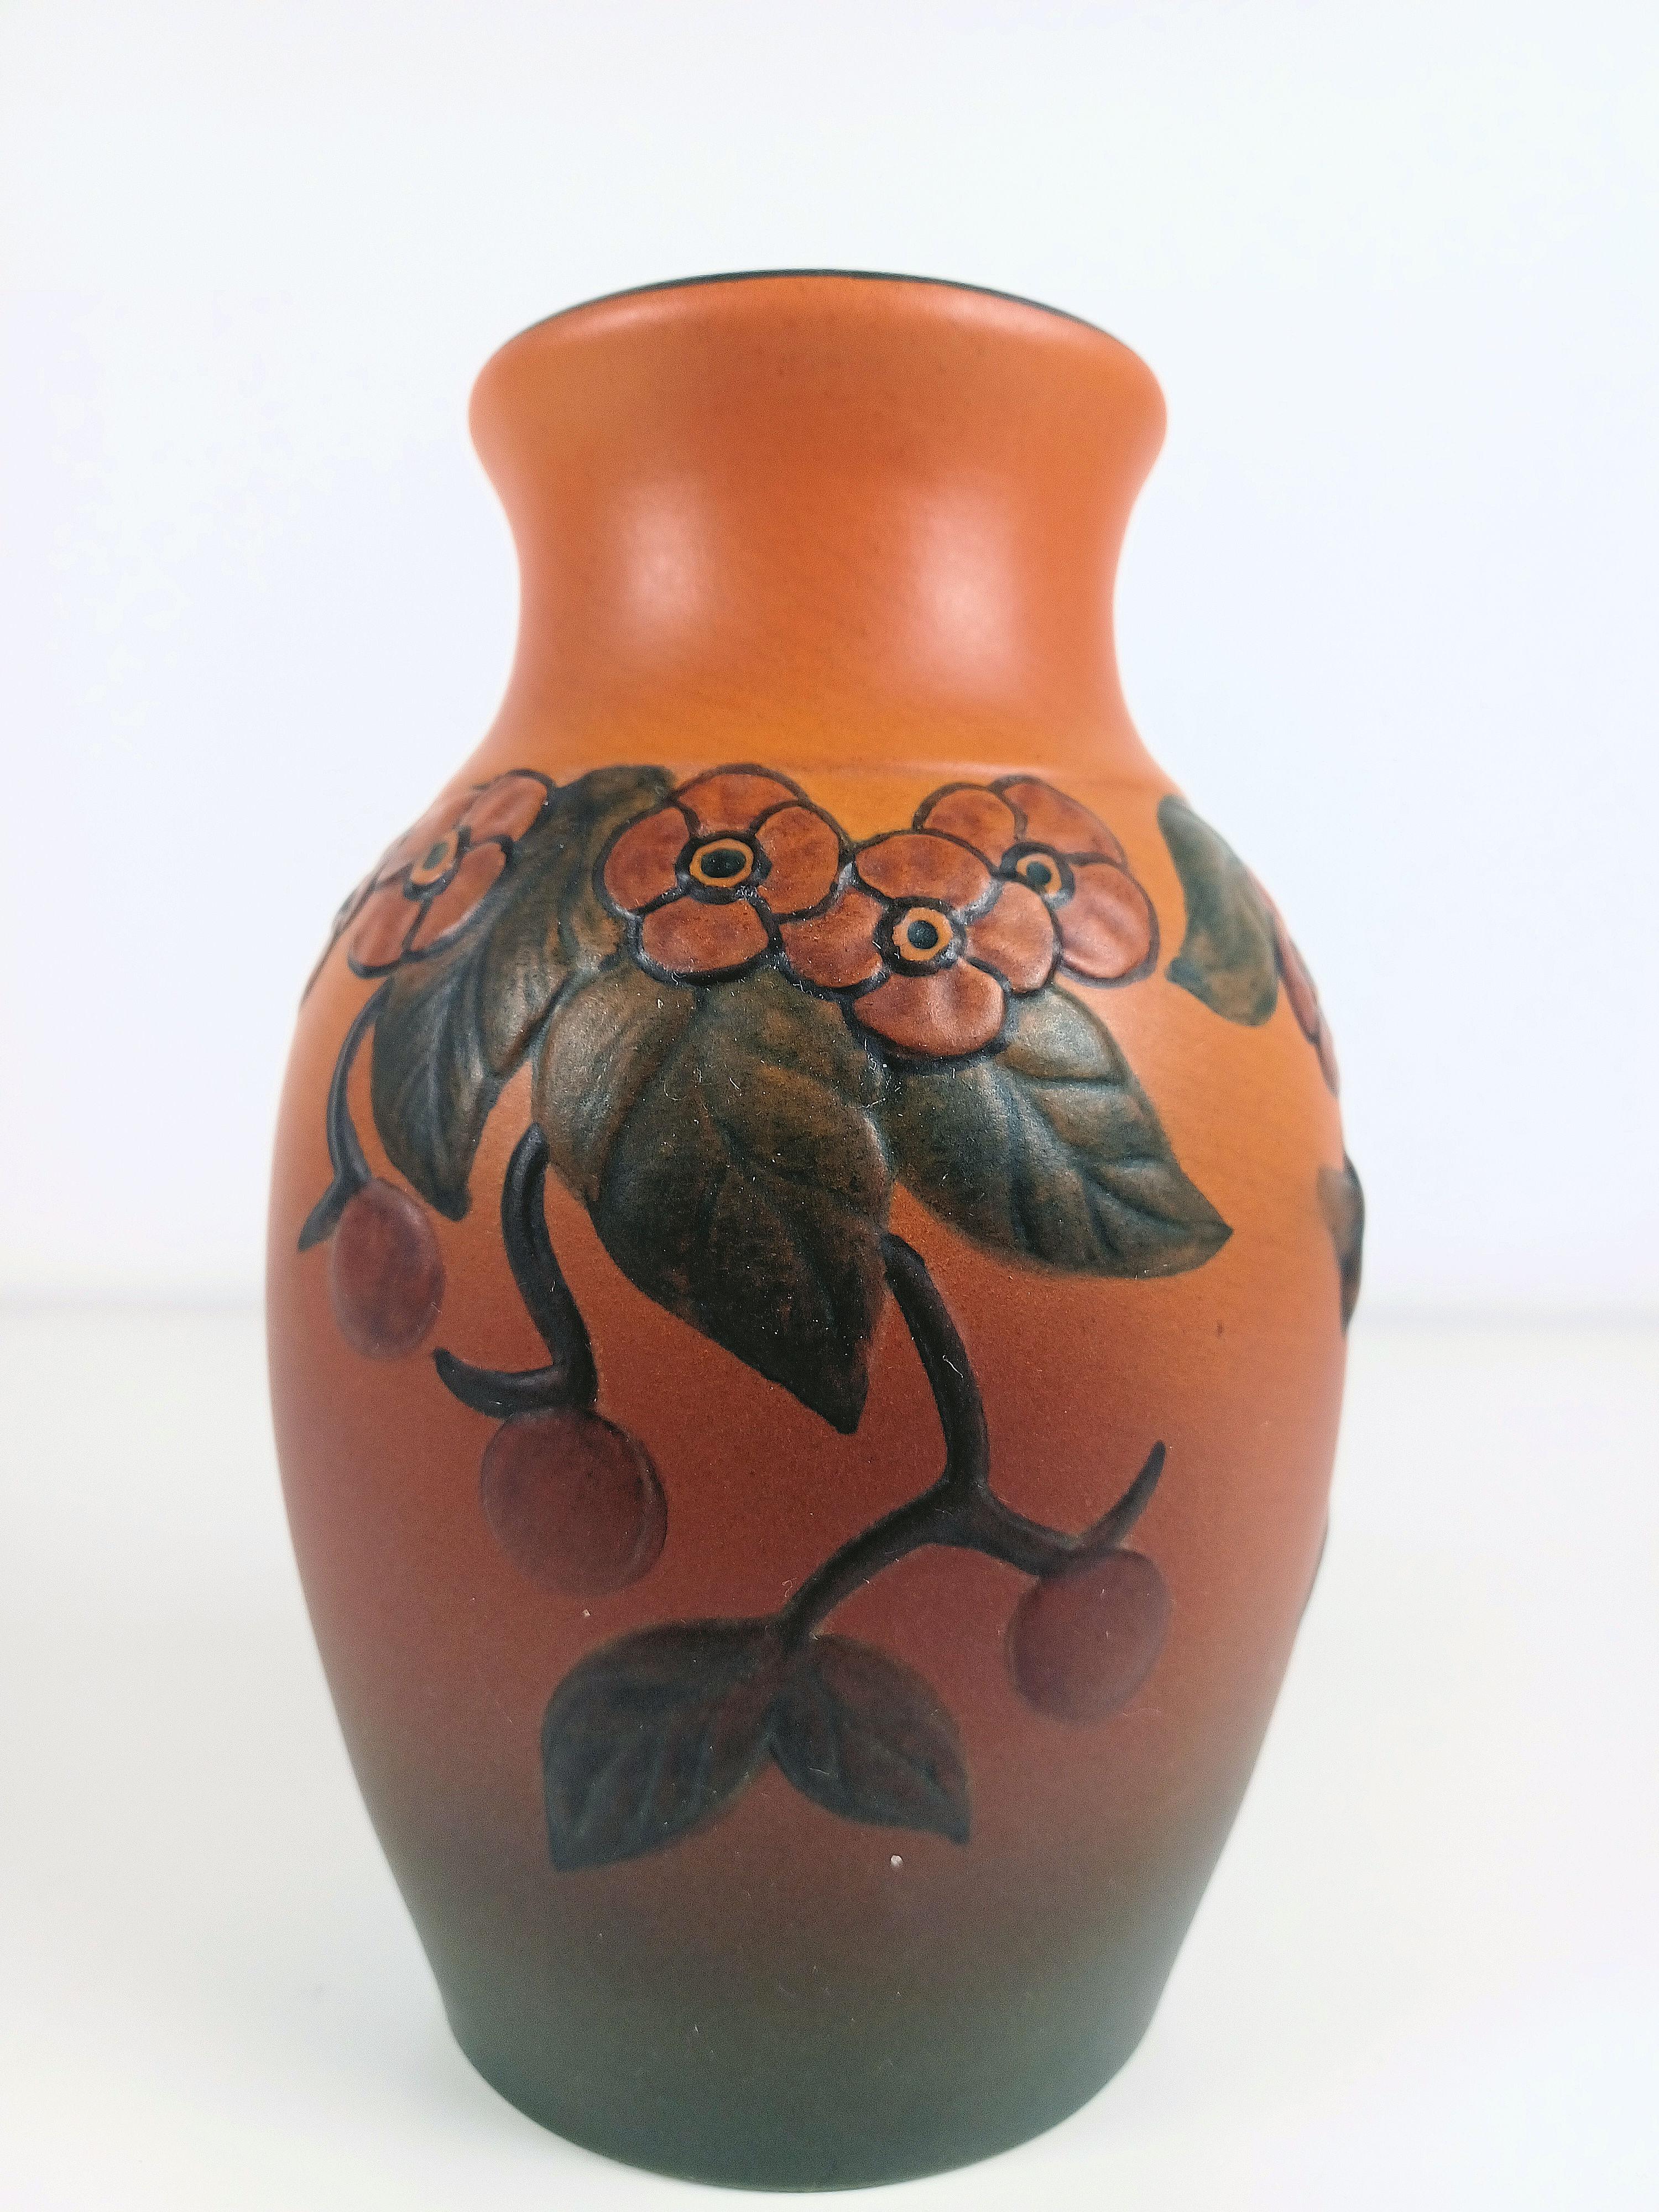 Vase artisanal danois Art nouveau décoré de fleurs par P. Ipsen Enke

Le vase Art nouveau, fabriqué à la main, a été conçu par Axel Sørensen en 1927 et présente les caractéristiques suivantes  des fleurs, des feuilles, des baies et une abeille qui